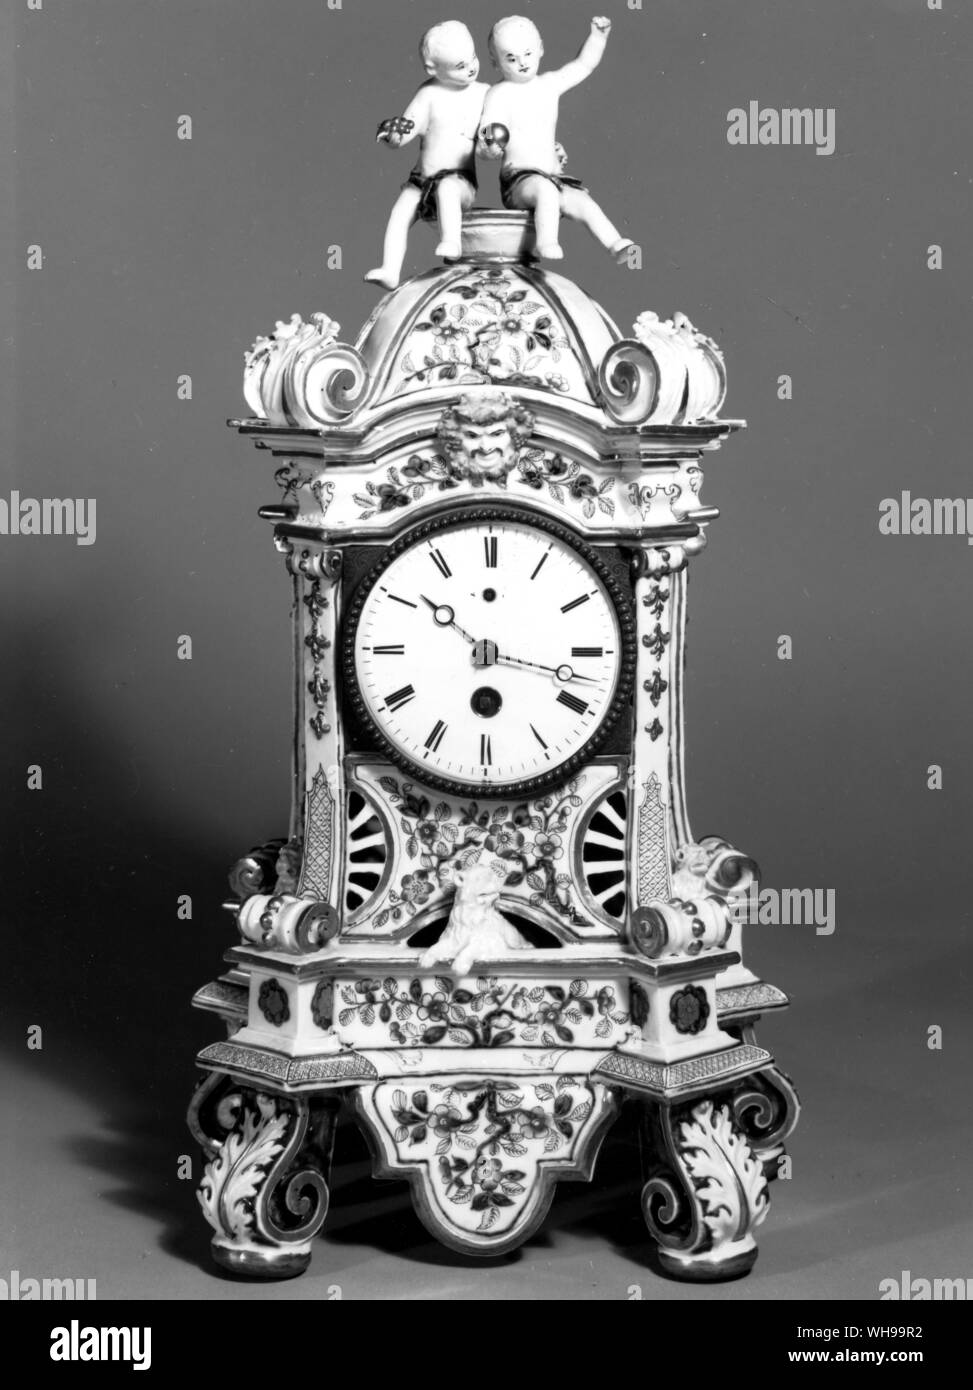 Reloj de porcelana de Viena, el rojo y el oro en la decoración de estilo Imari chino (es decir, copiando la copia chino japonés) Foto de stock